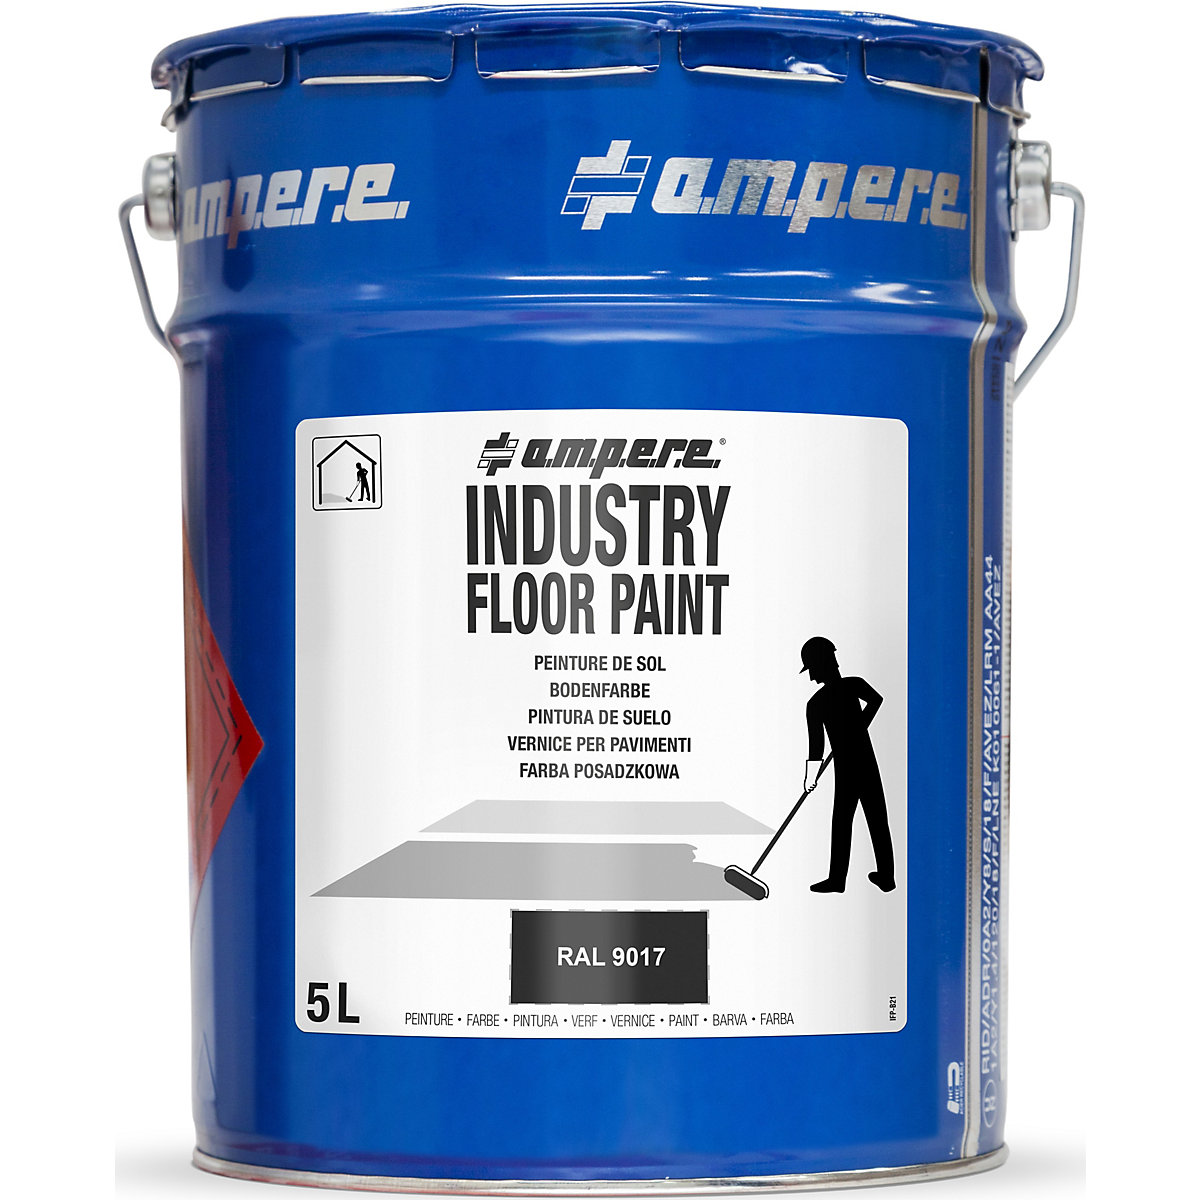 Barva pro podlahové značení Industry Floor Paint® – Ampere, objem 5 l, černá-10